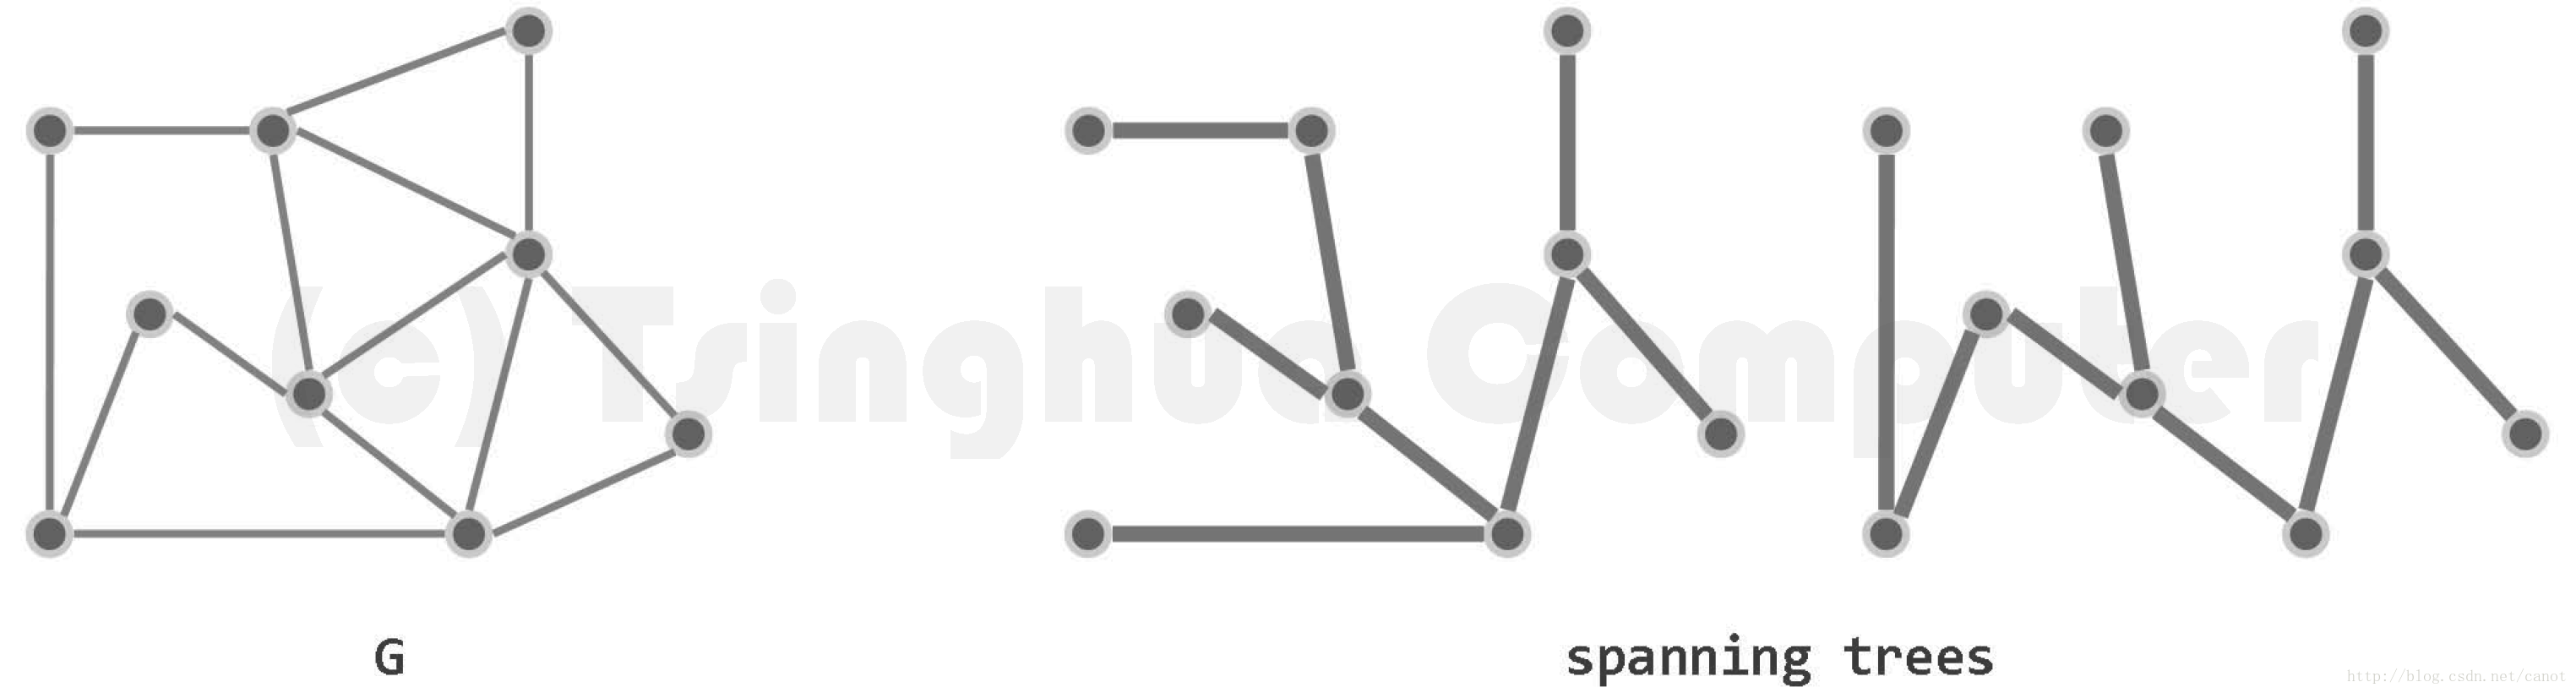 某个连通图能够覆盖图G的所有节点，这称为支撑树